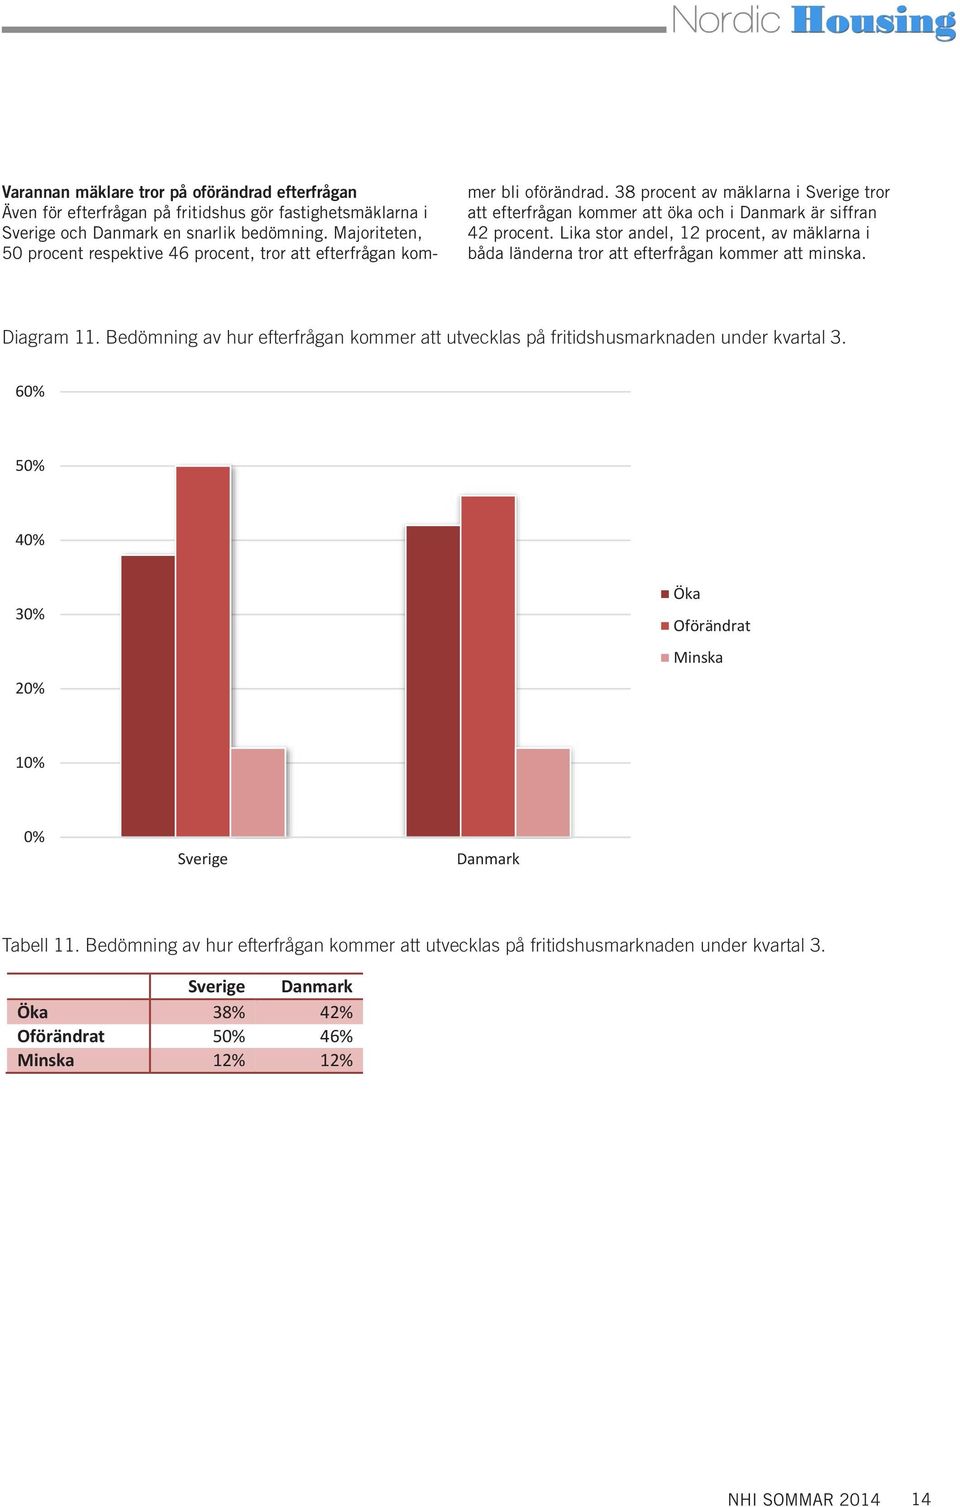 38 procent av mäklarna i Sverige tror att efterfrågan kommer att öka och i Danmark är siffran 42 procent.